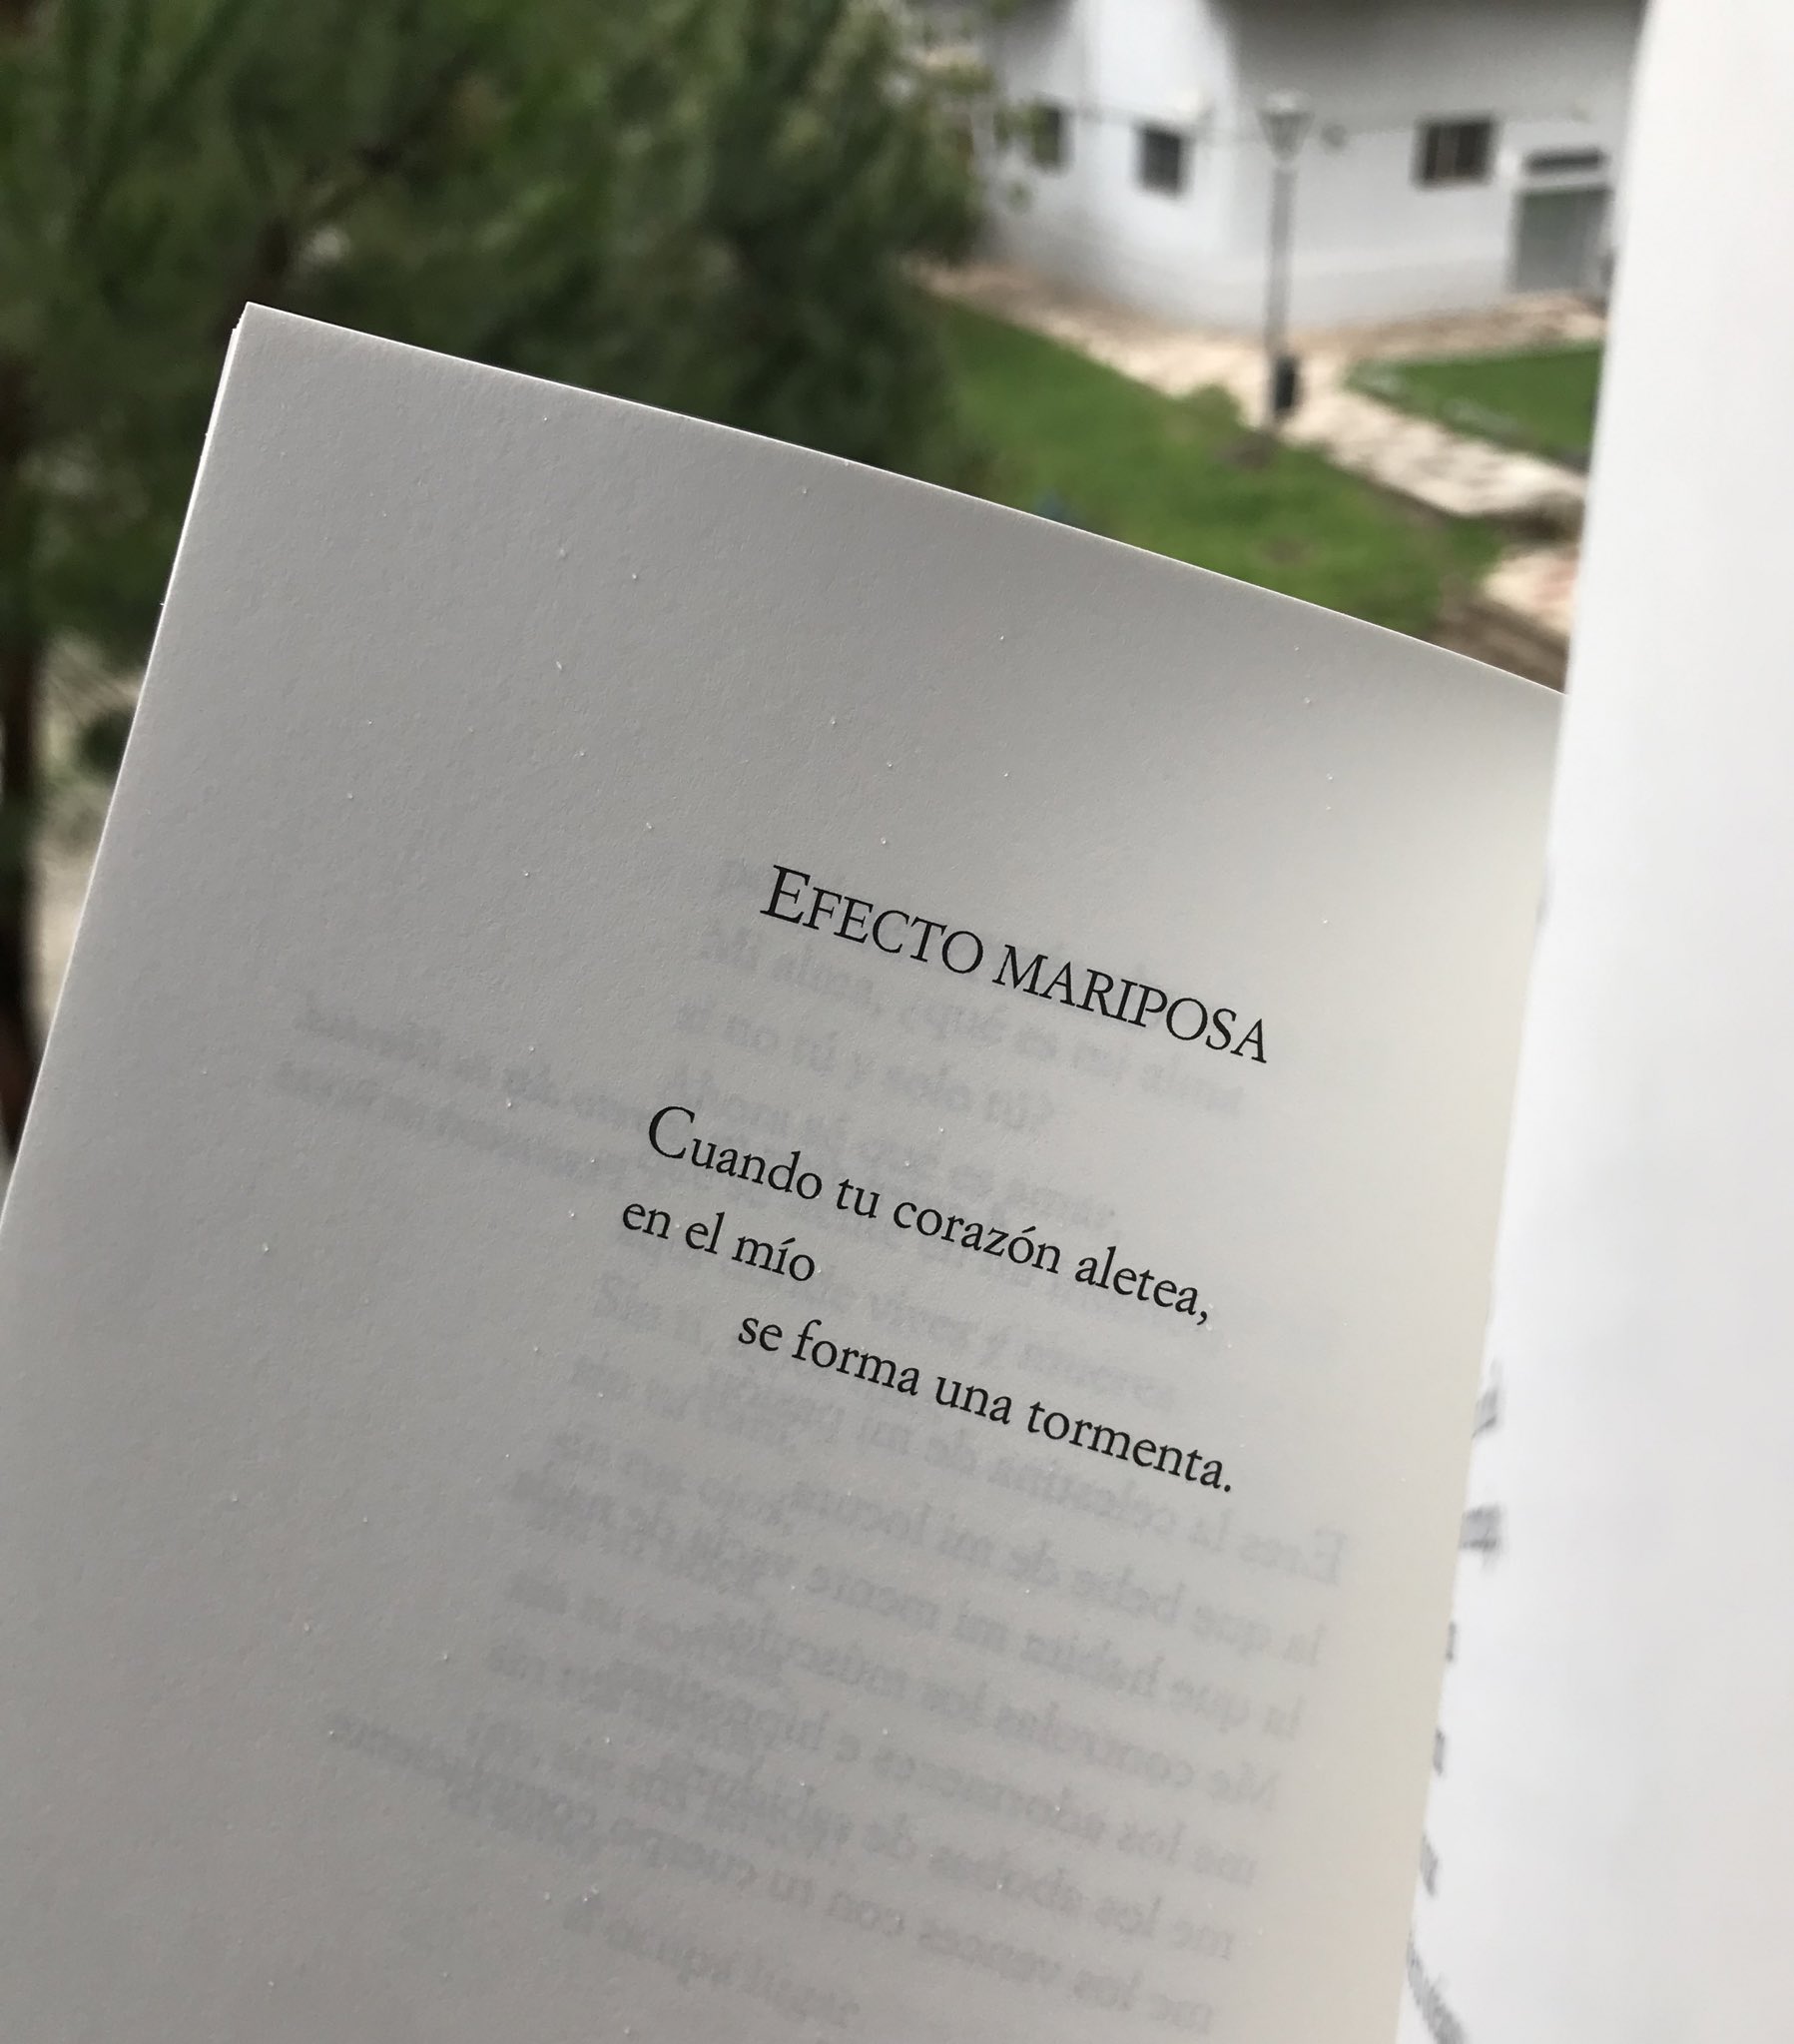 Efecto mariposa | José María Andreo